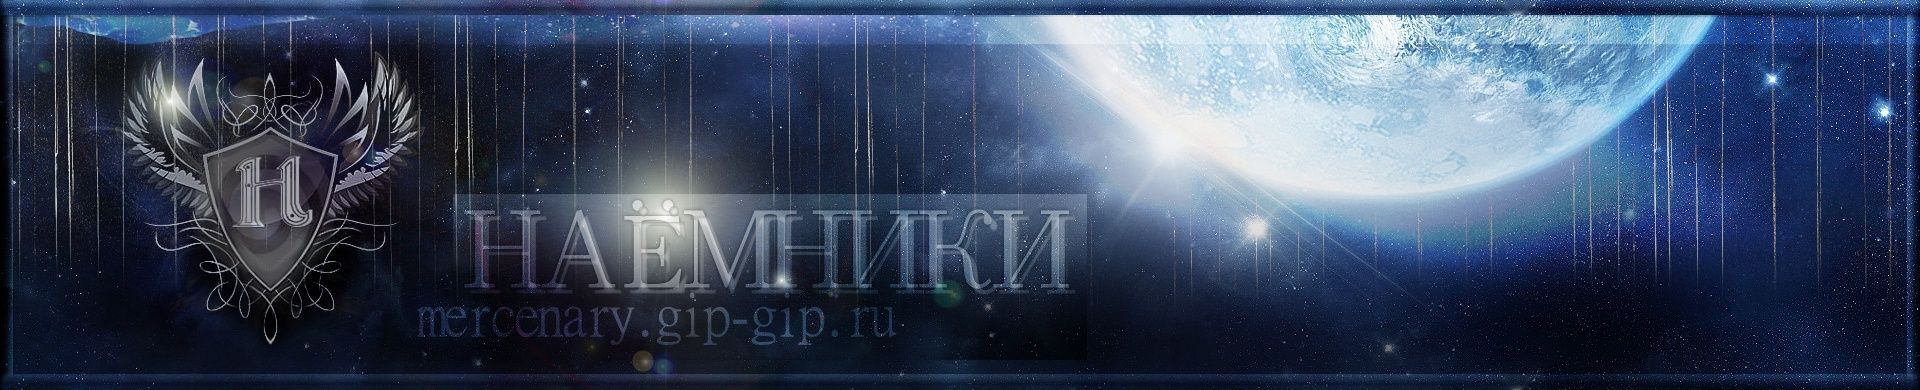 Видео защиты территории "Терасса восхождения" 22.12.12 Final110